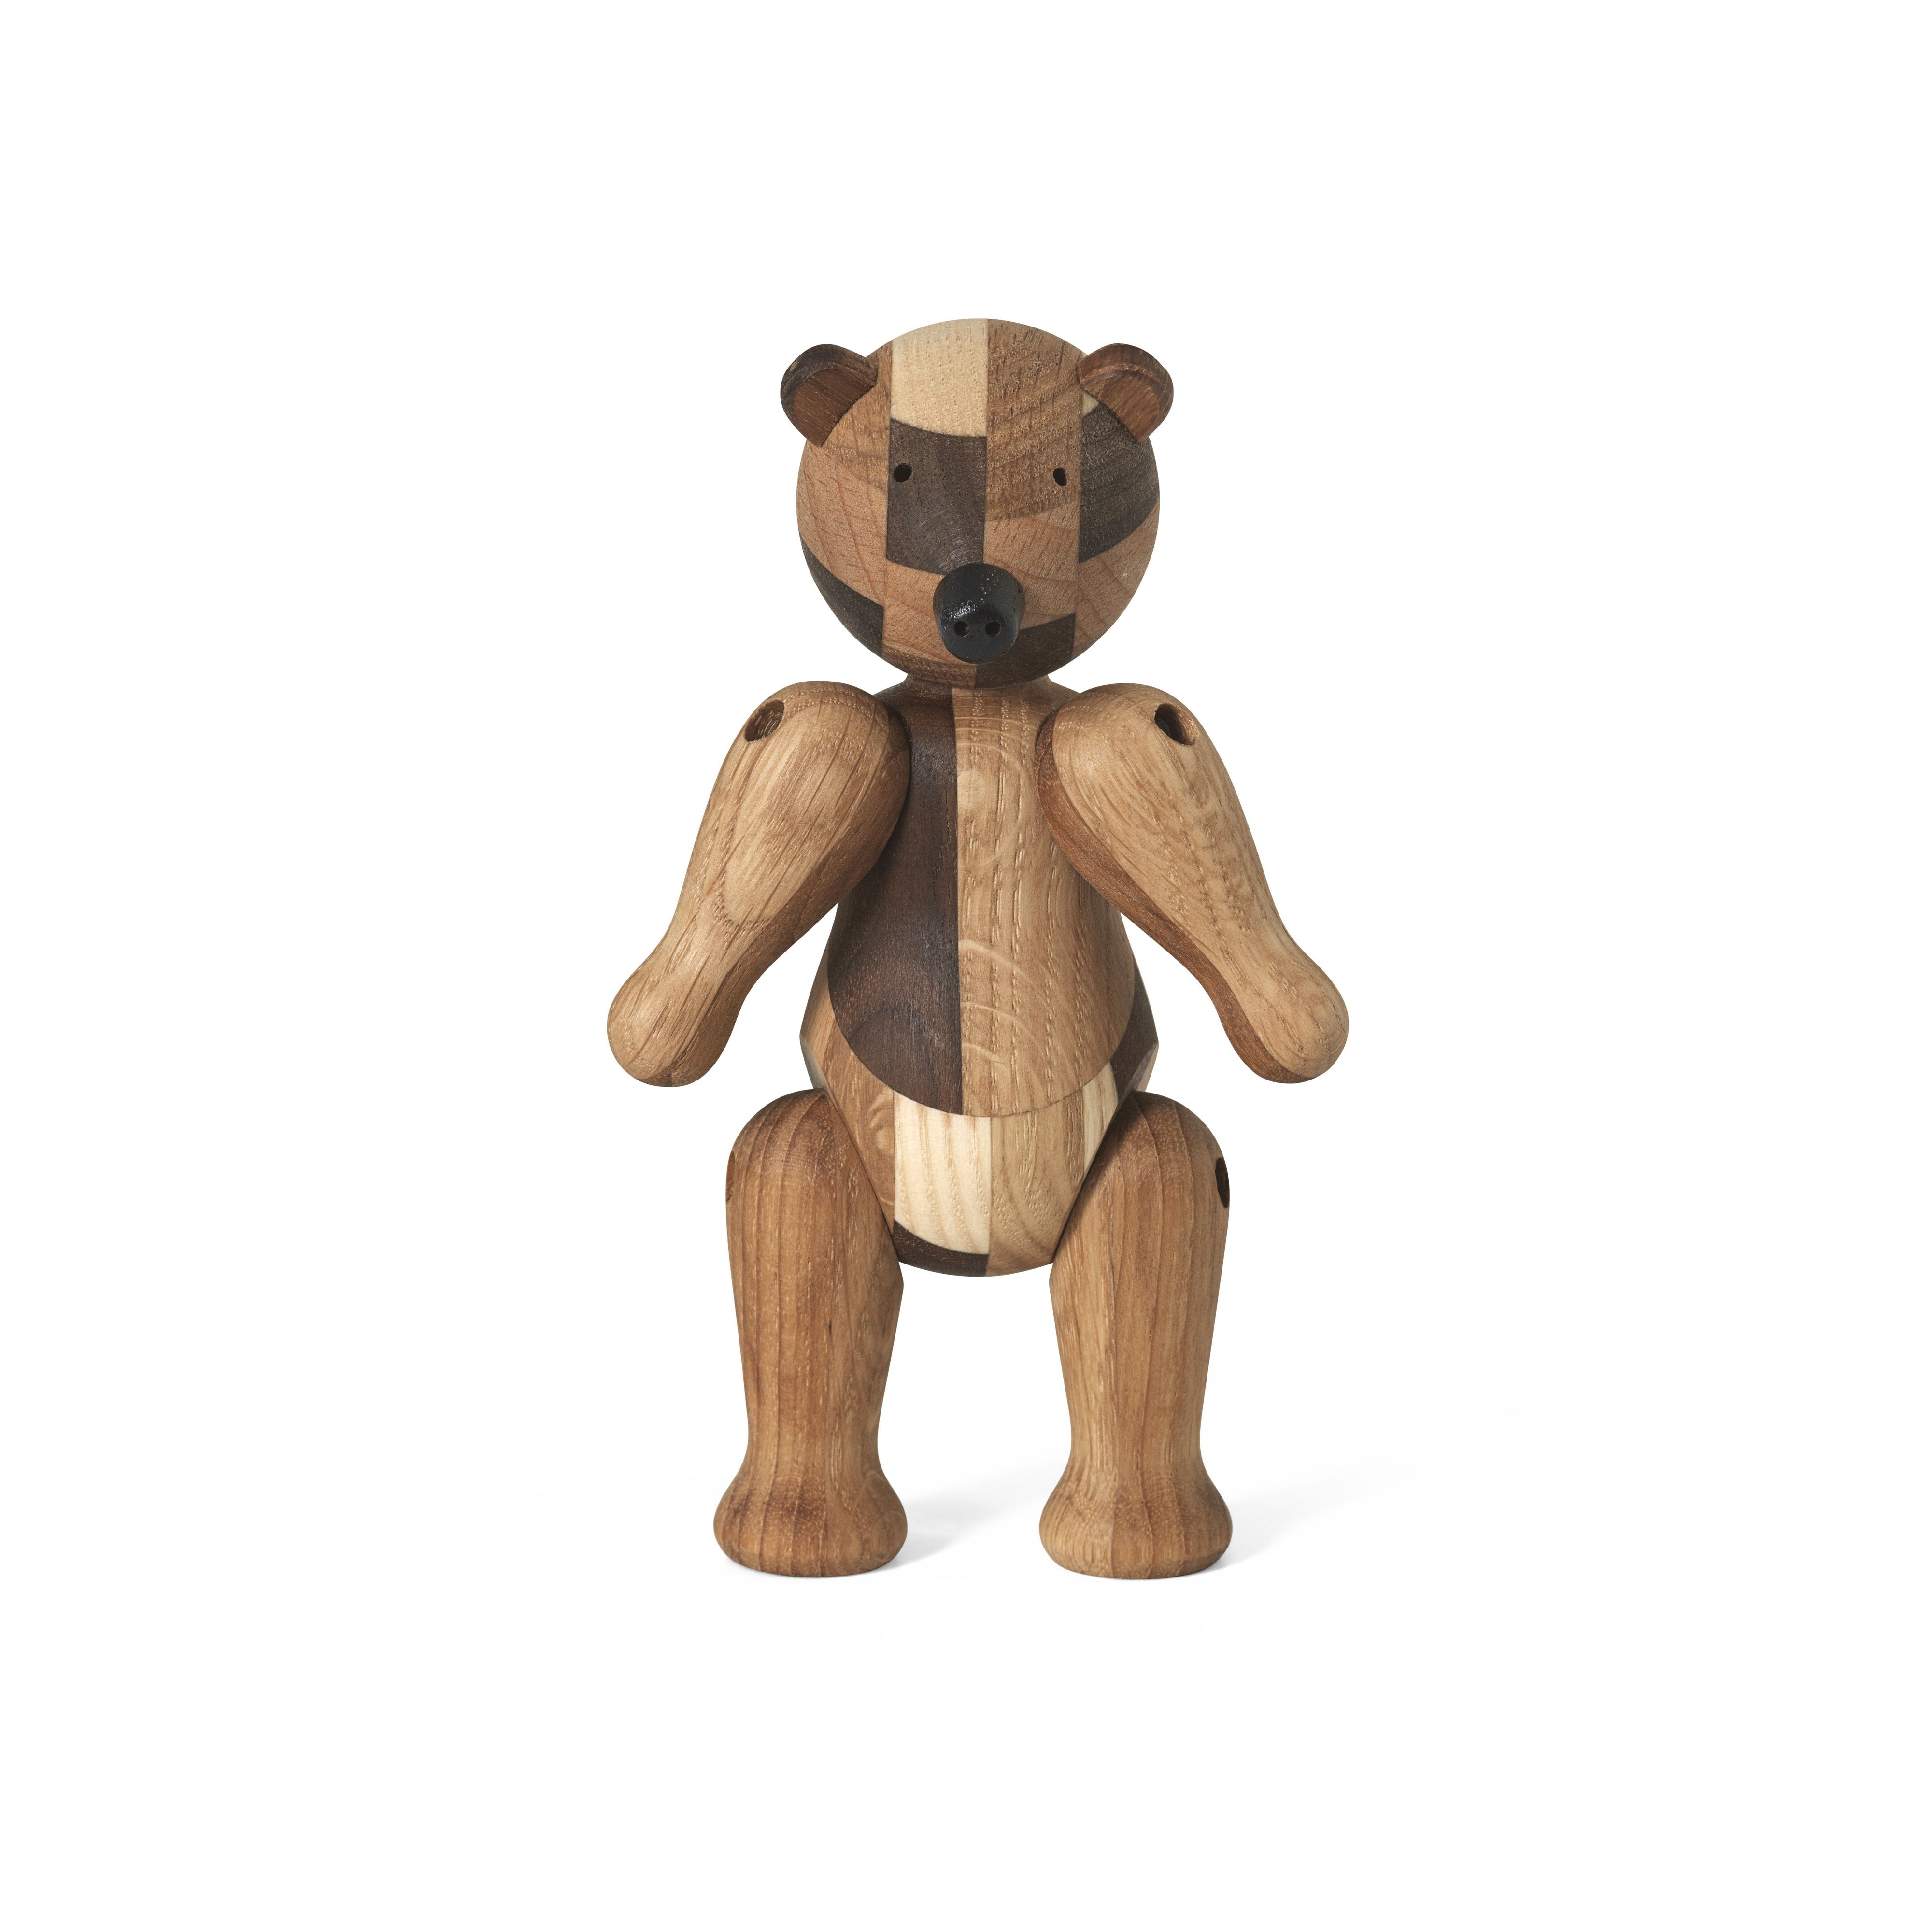 凯·博杰森（Kay Bojesen）重新设计了周年纪念熊，小